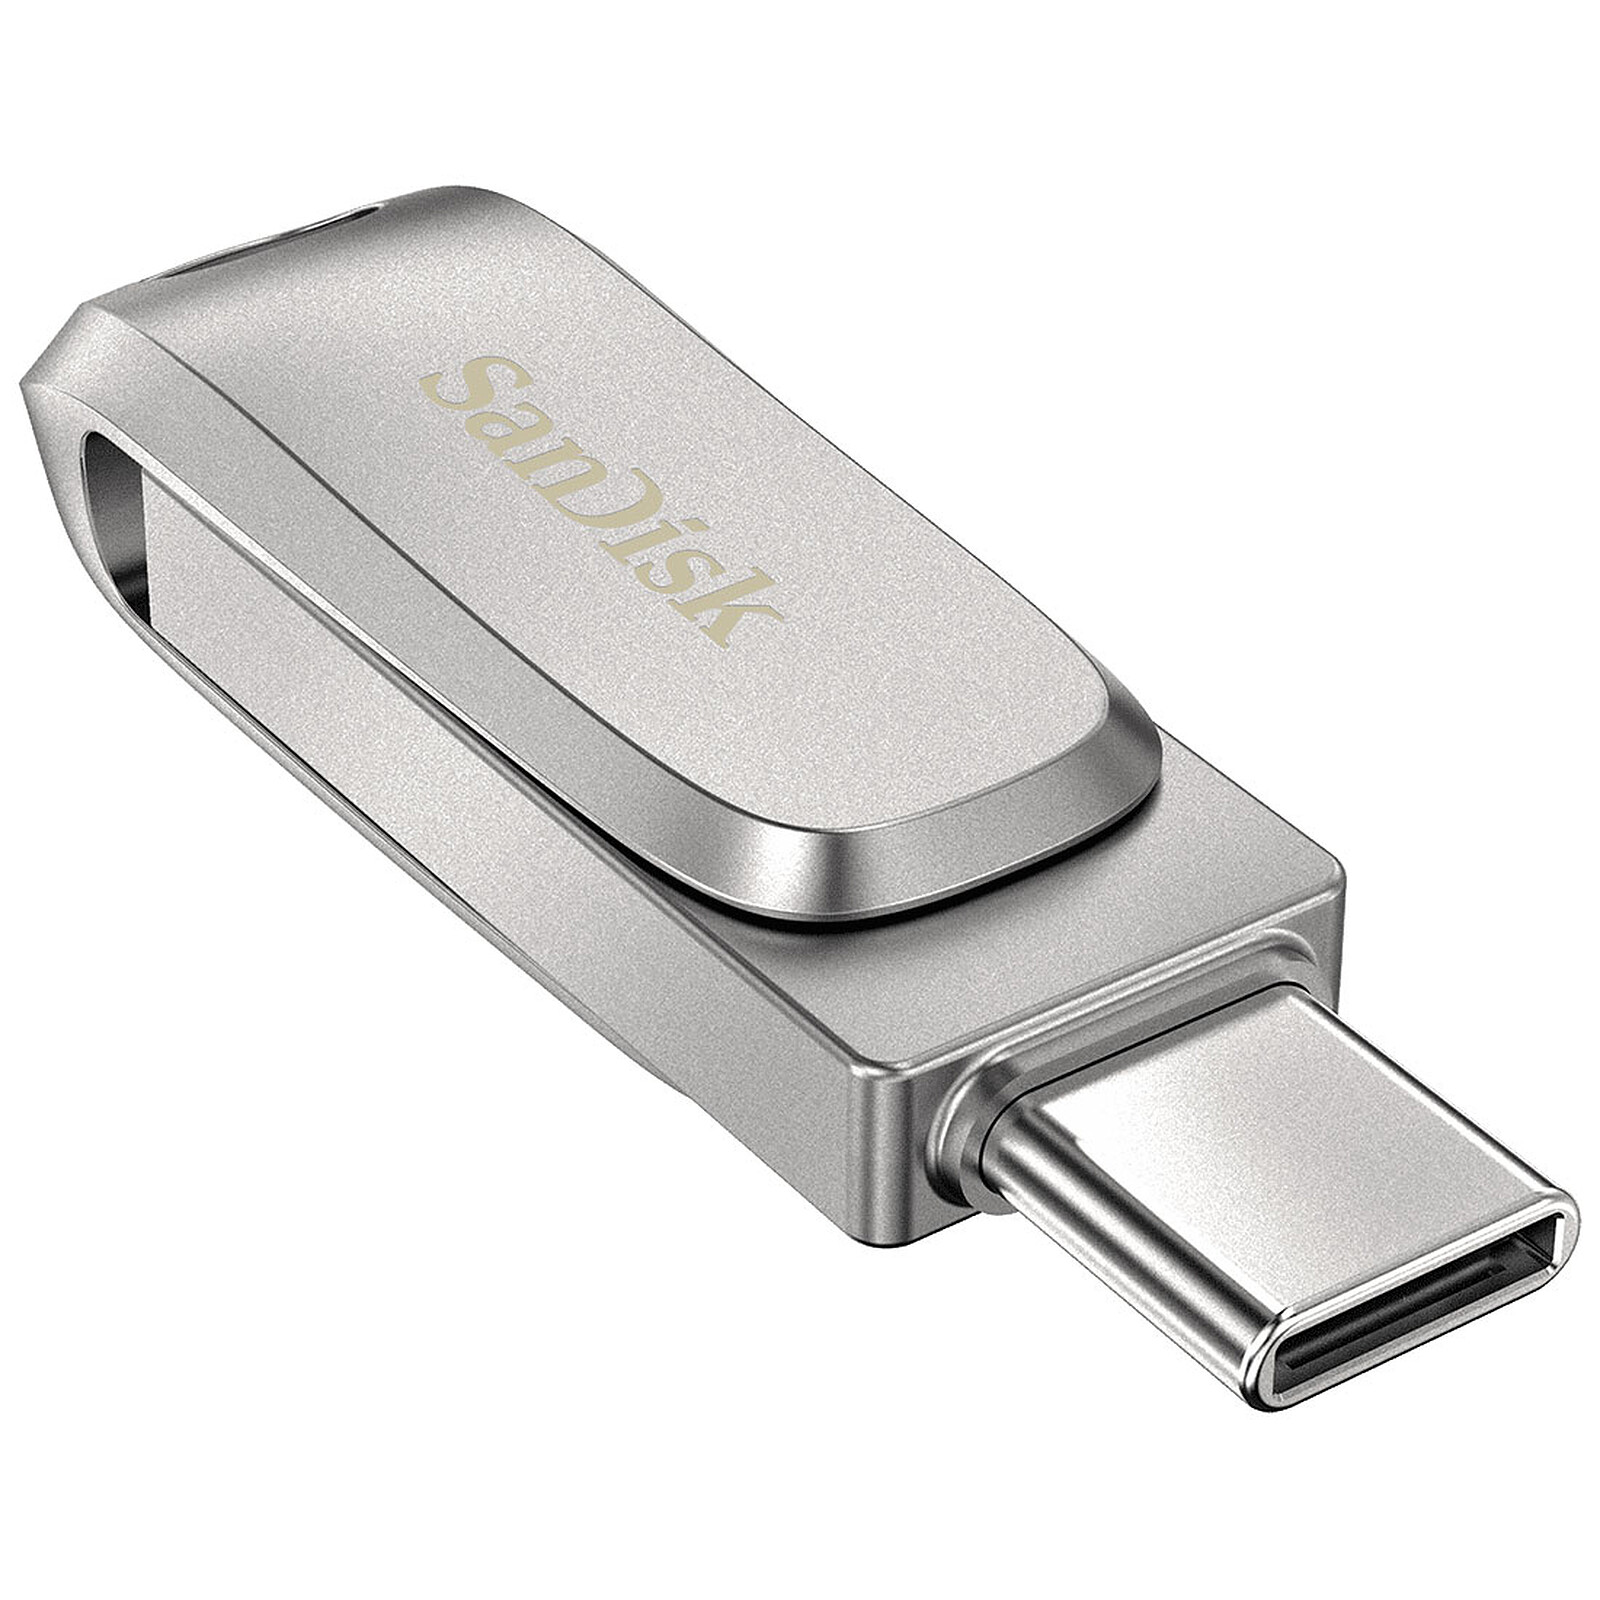 SanDisk annonce une nouvelle clé USB pour les smartphones et tablettes  Android